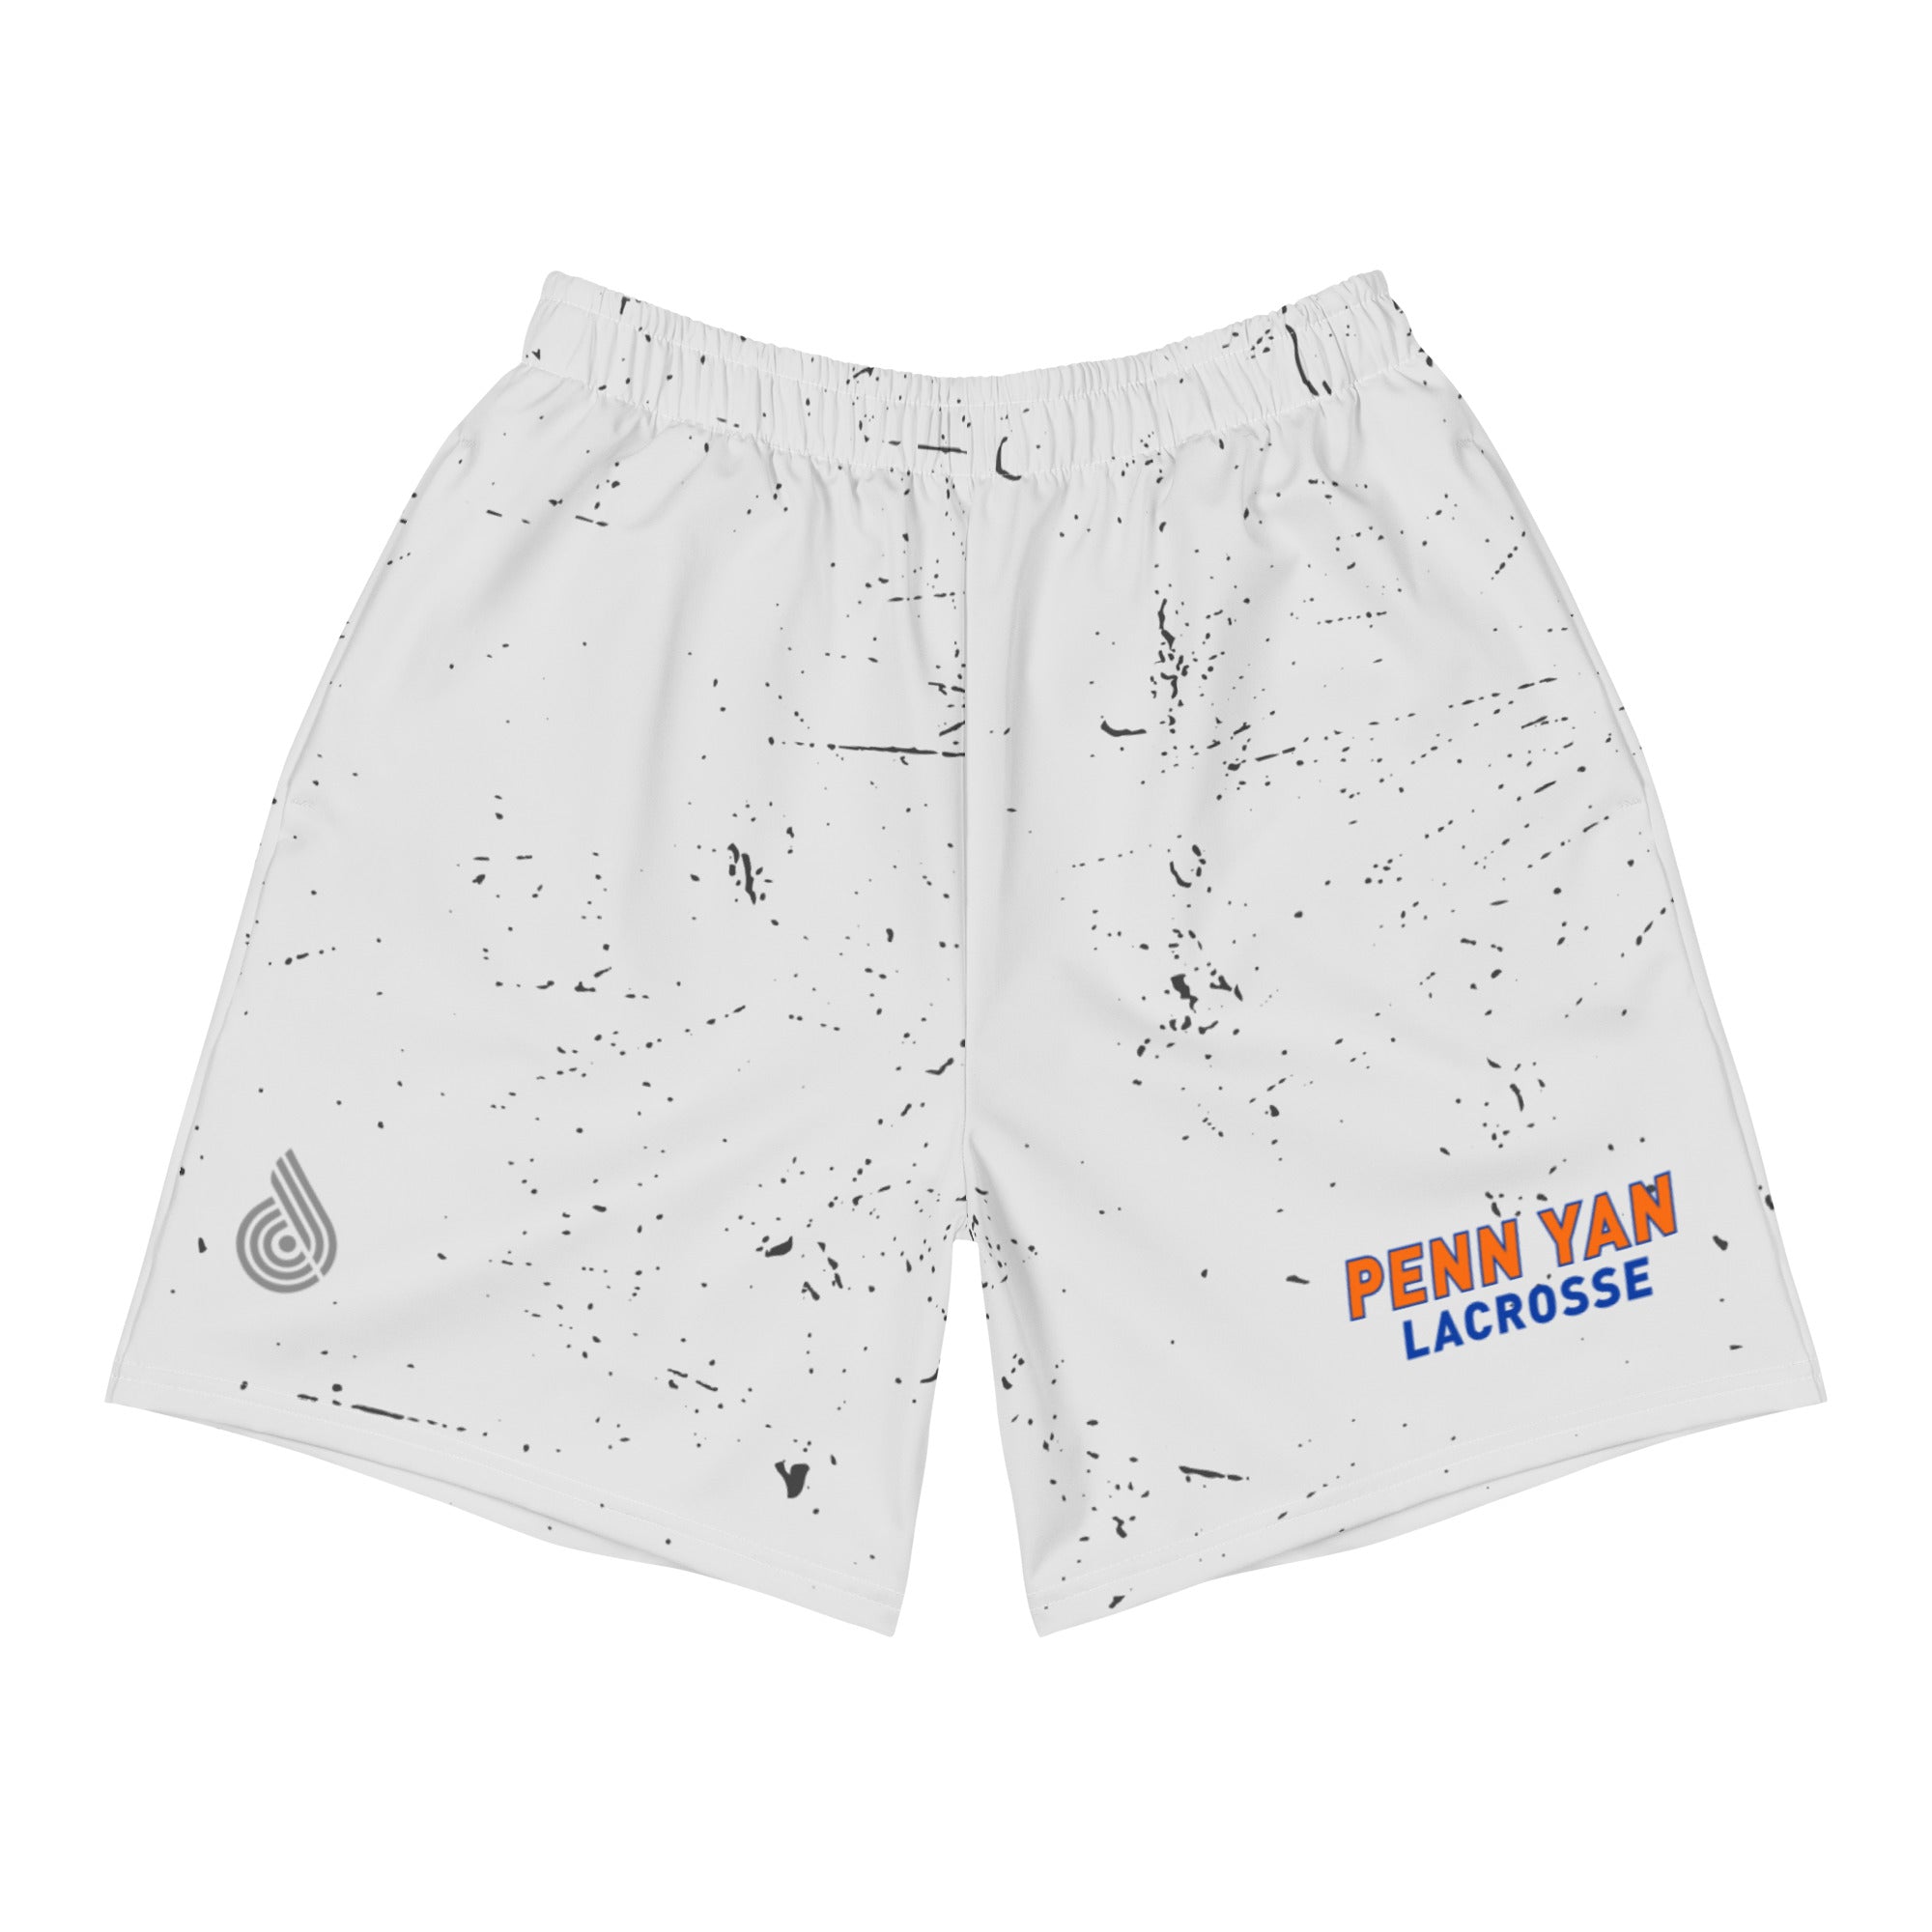 Penn Yan Men's Athletic Shorts